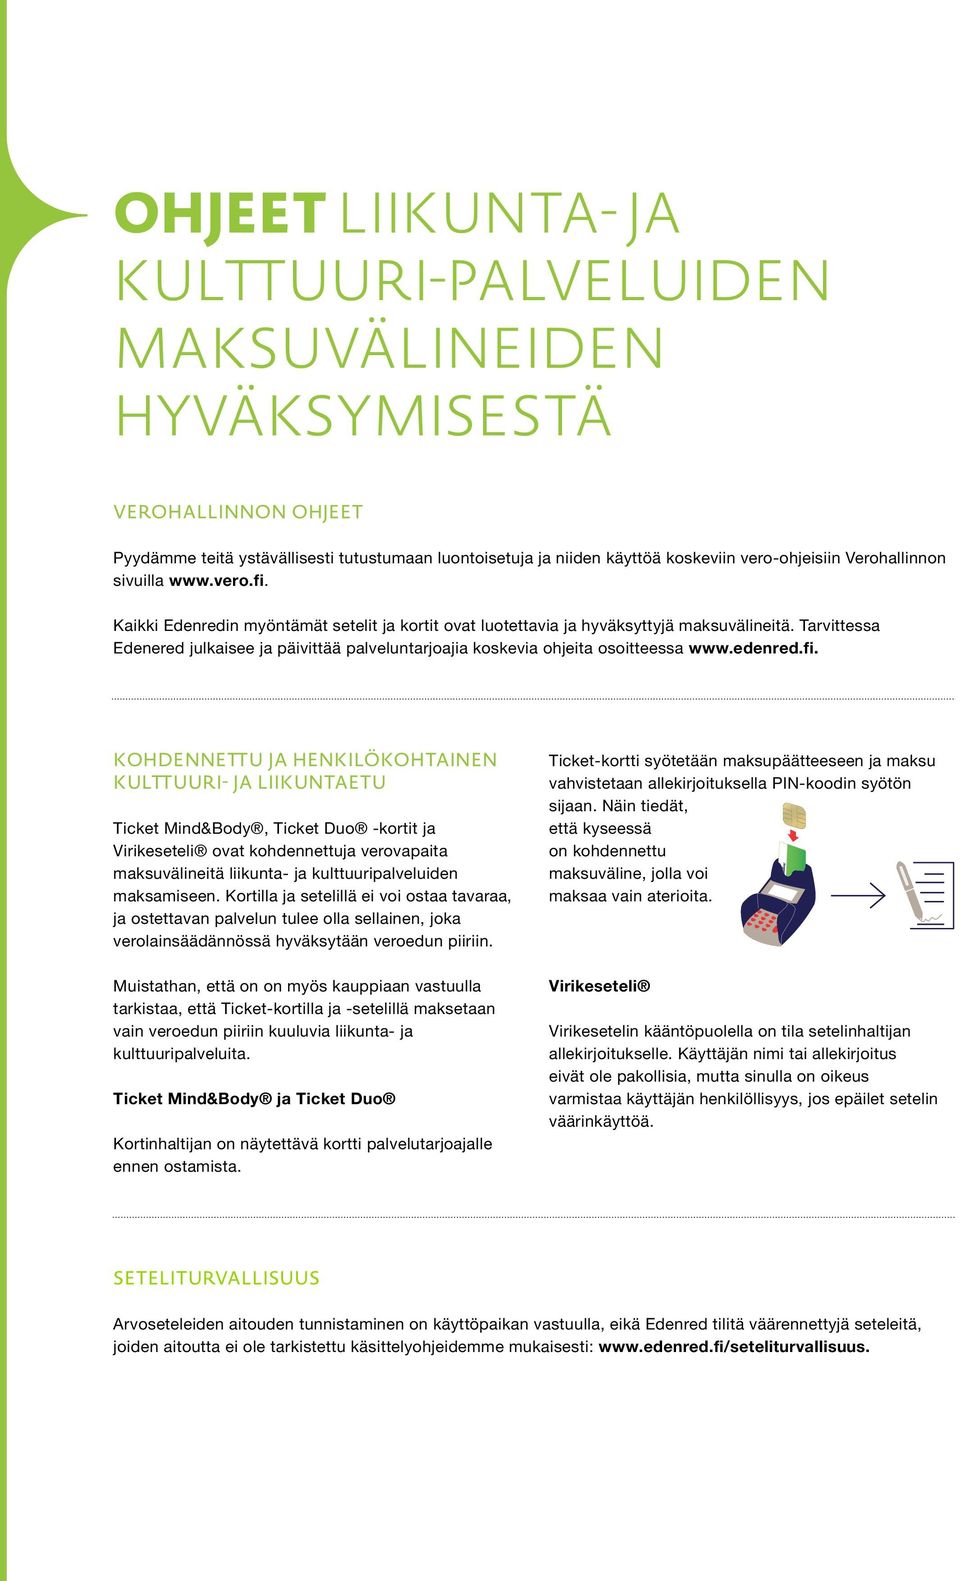 Tarvittessa Edenered julkaisee ja päivittää palveluntarjoajia koskevia ohjeita osoitteessa www.edenred.fi.